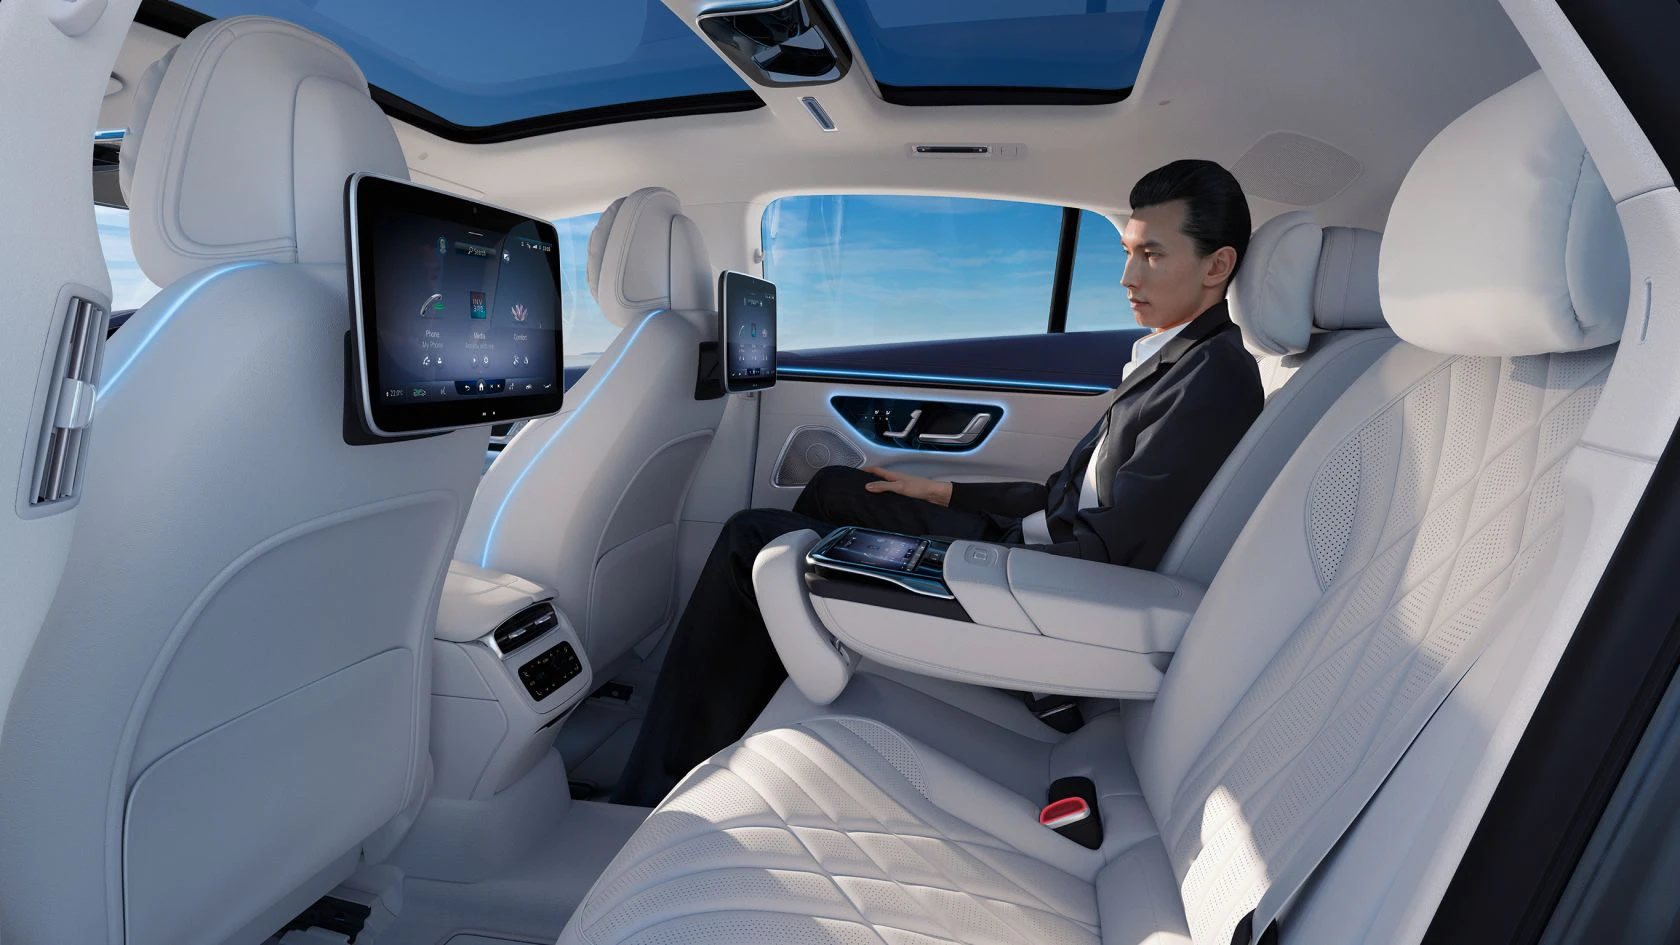 Obrázek znázorňuje funkci špičkového multimediálního systému MBUX pro zadní řadu sedadel vozu EQS od Mercedes-EQ.